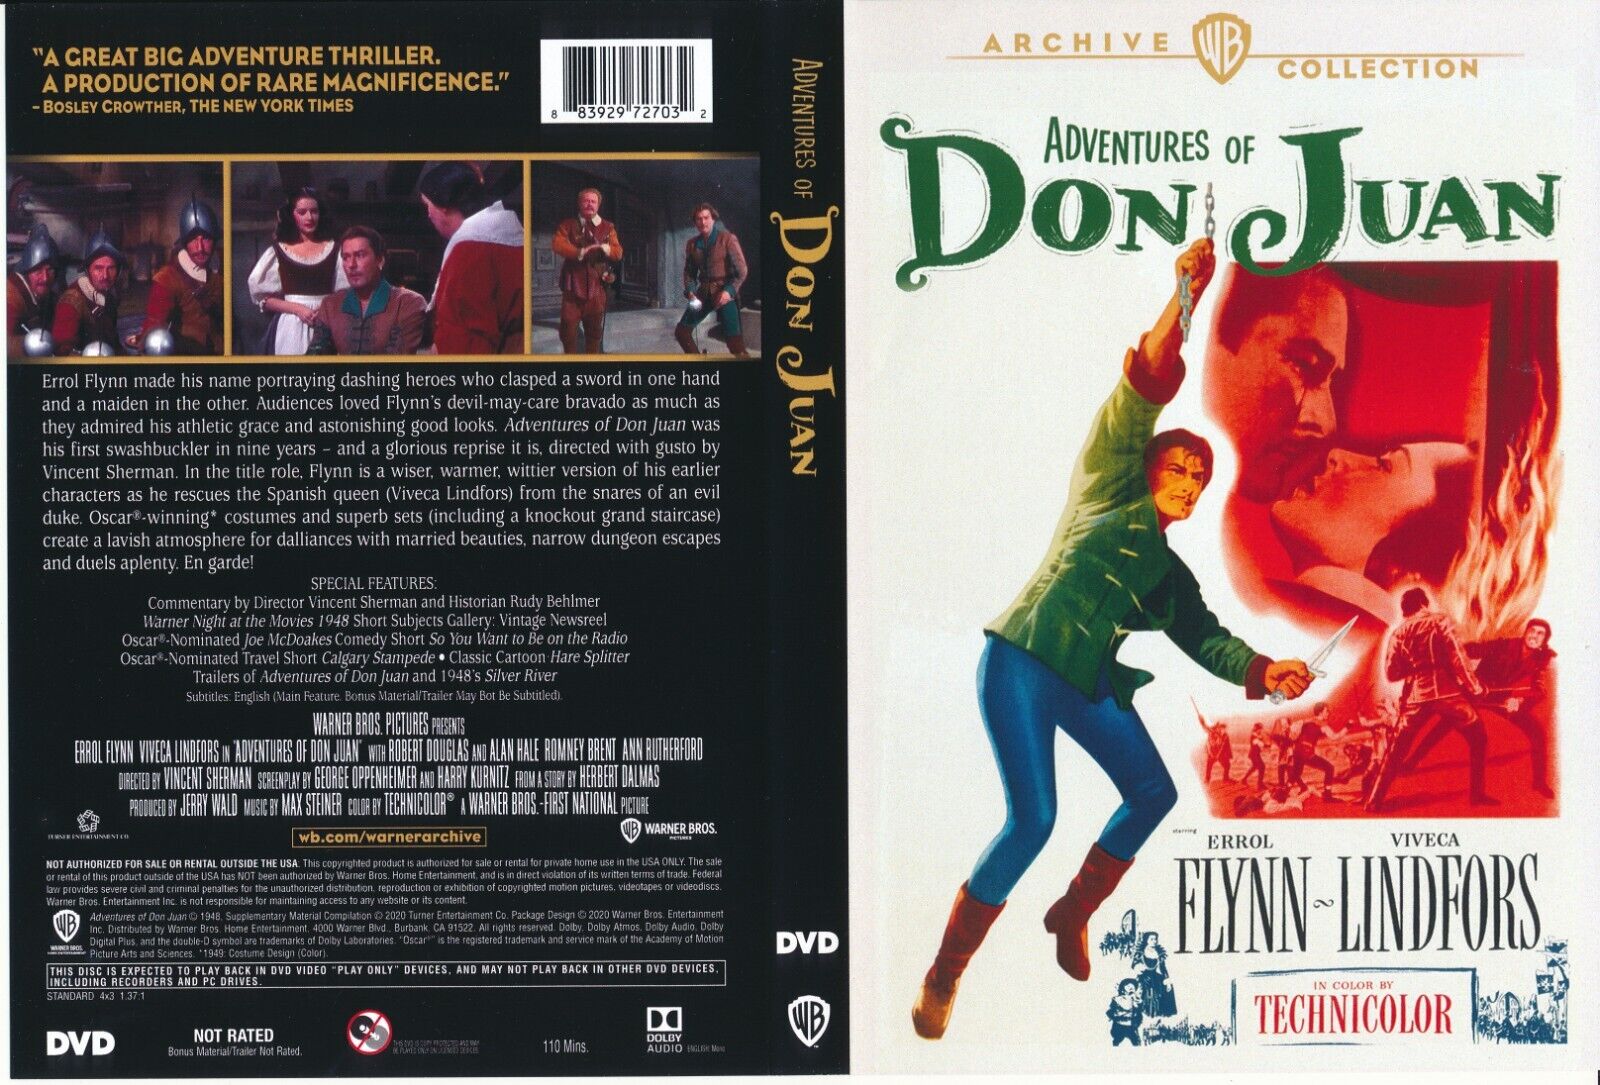 Errol Flynn Collectie DvD 18 van 24 - The adventures of Don Juan 1948